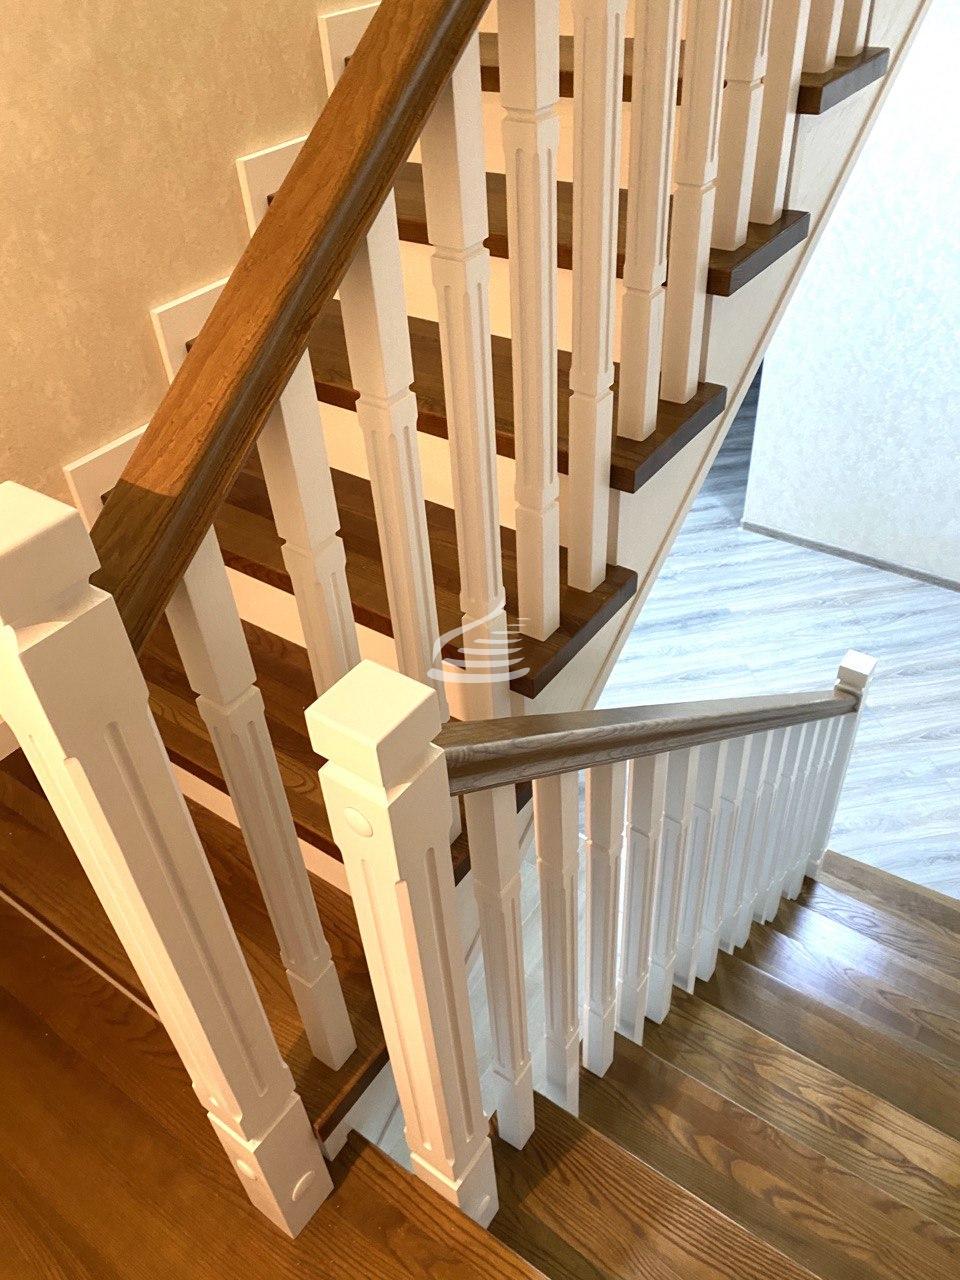 Изящная лестница в современном классическом стиле из массива Ясеня.  Подиумная ступень необычной формы смотрится свежо и актуально, а ограждение в виде прямых столбов с фрезеровкой и решётчатая дверь придает этой лестнице легкость и изящество.